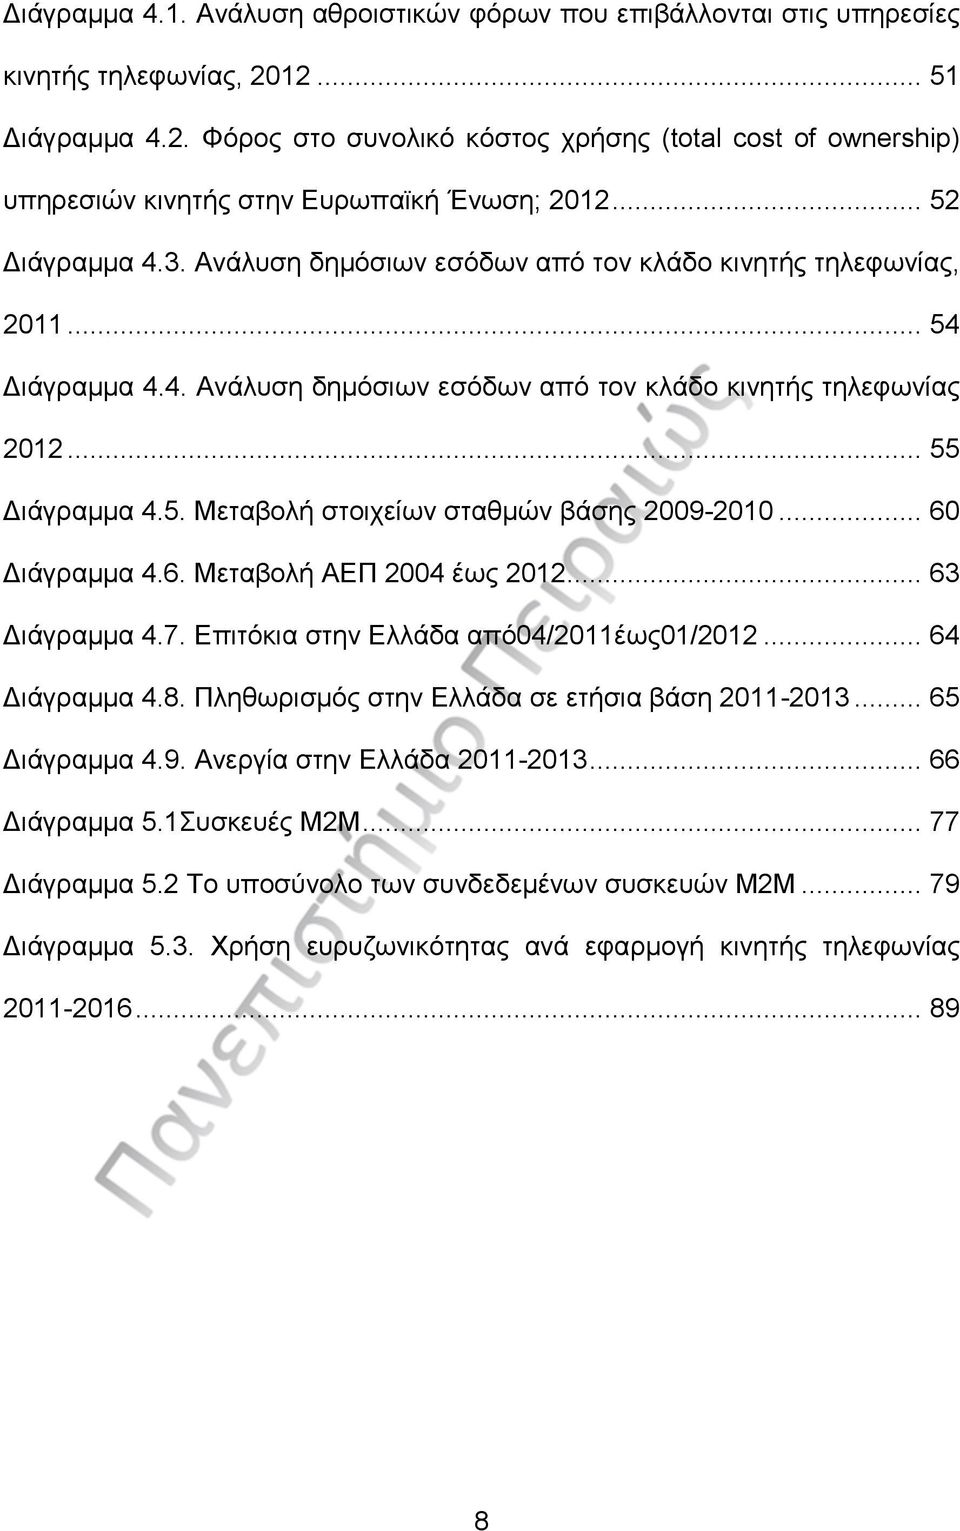 .. 60 Διάγραμμα 4.6. Μεταβολή ΑΕΠ 2004 έως 2012... 63 Διάγραμμα 4.7. Επιτόκια στην Ελλάδα από04/2011έως01/2012... 64 Διάγραμμα 4.8. Πληθωρισμός στην Ελλάδα σε ετήσια βάση 2011-2013... 65 Διάγραμμα 4.